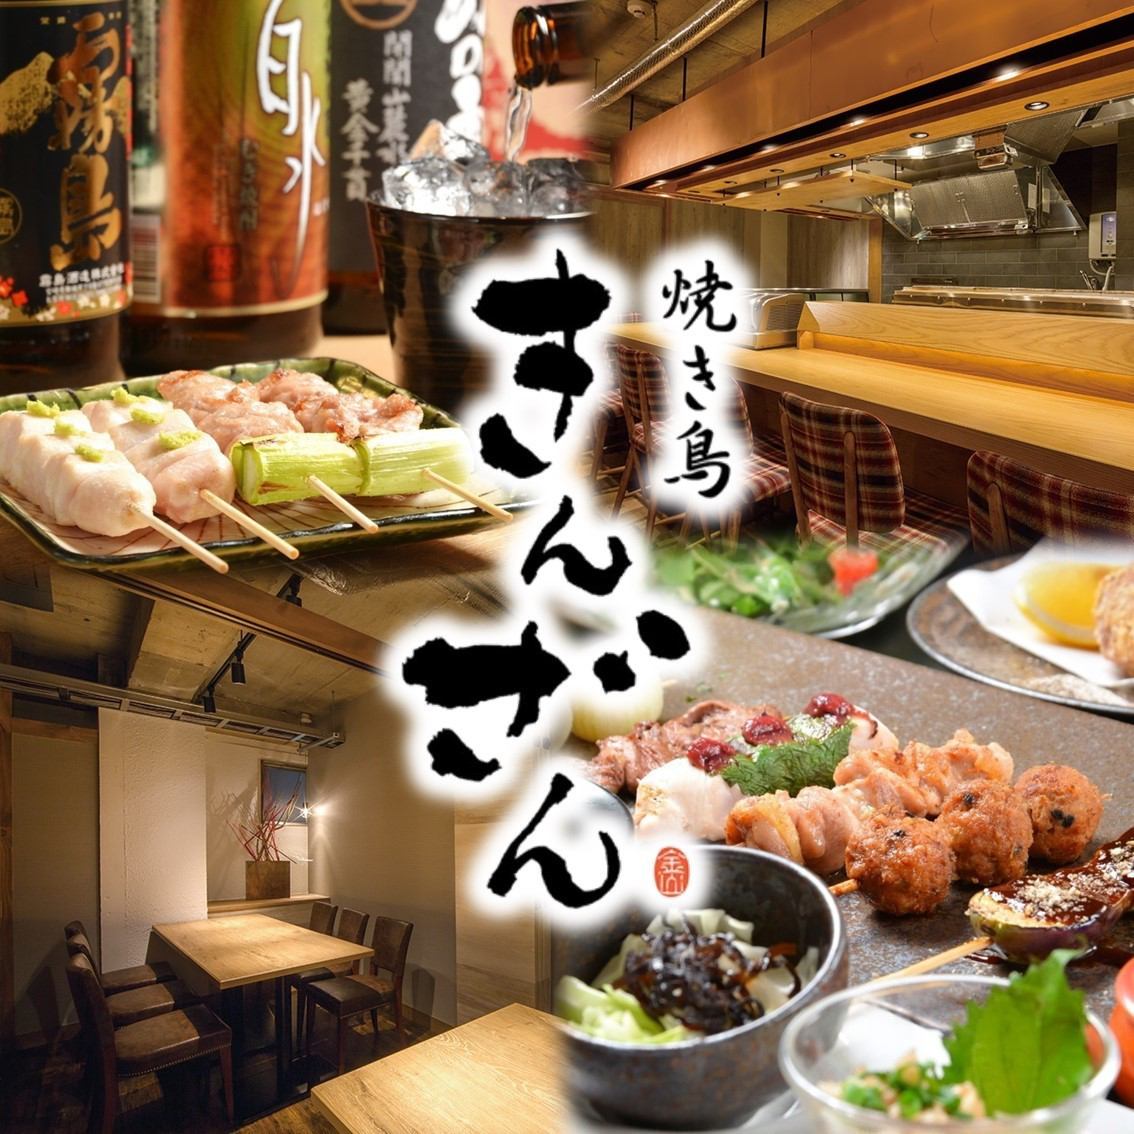 名古屋著名的烤雞肉串餐廳“ Kinzan”♪在時尚的空間中品嚐精緻的烤雞肉串♪